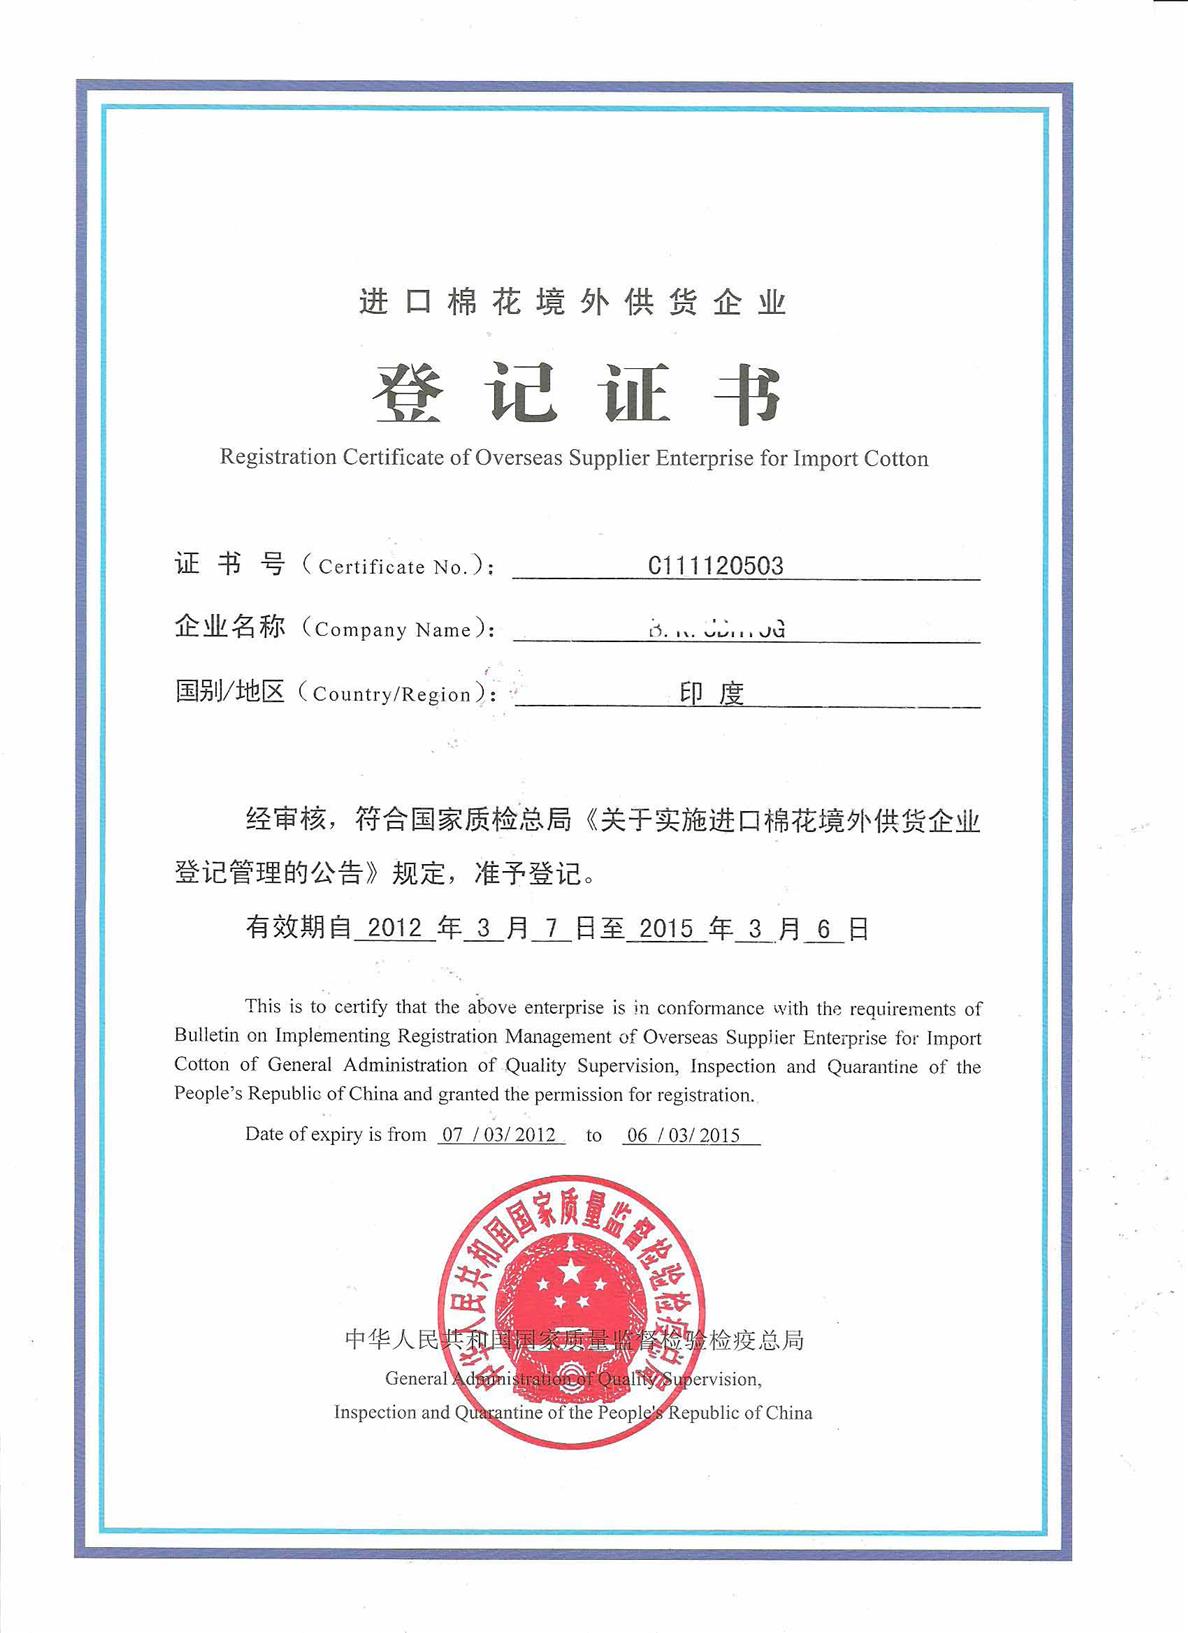 乌兹别克斯坦进口棉花国外供货企业登记证书京元 怎么申请 进口棉花注册登记